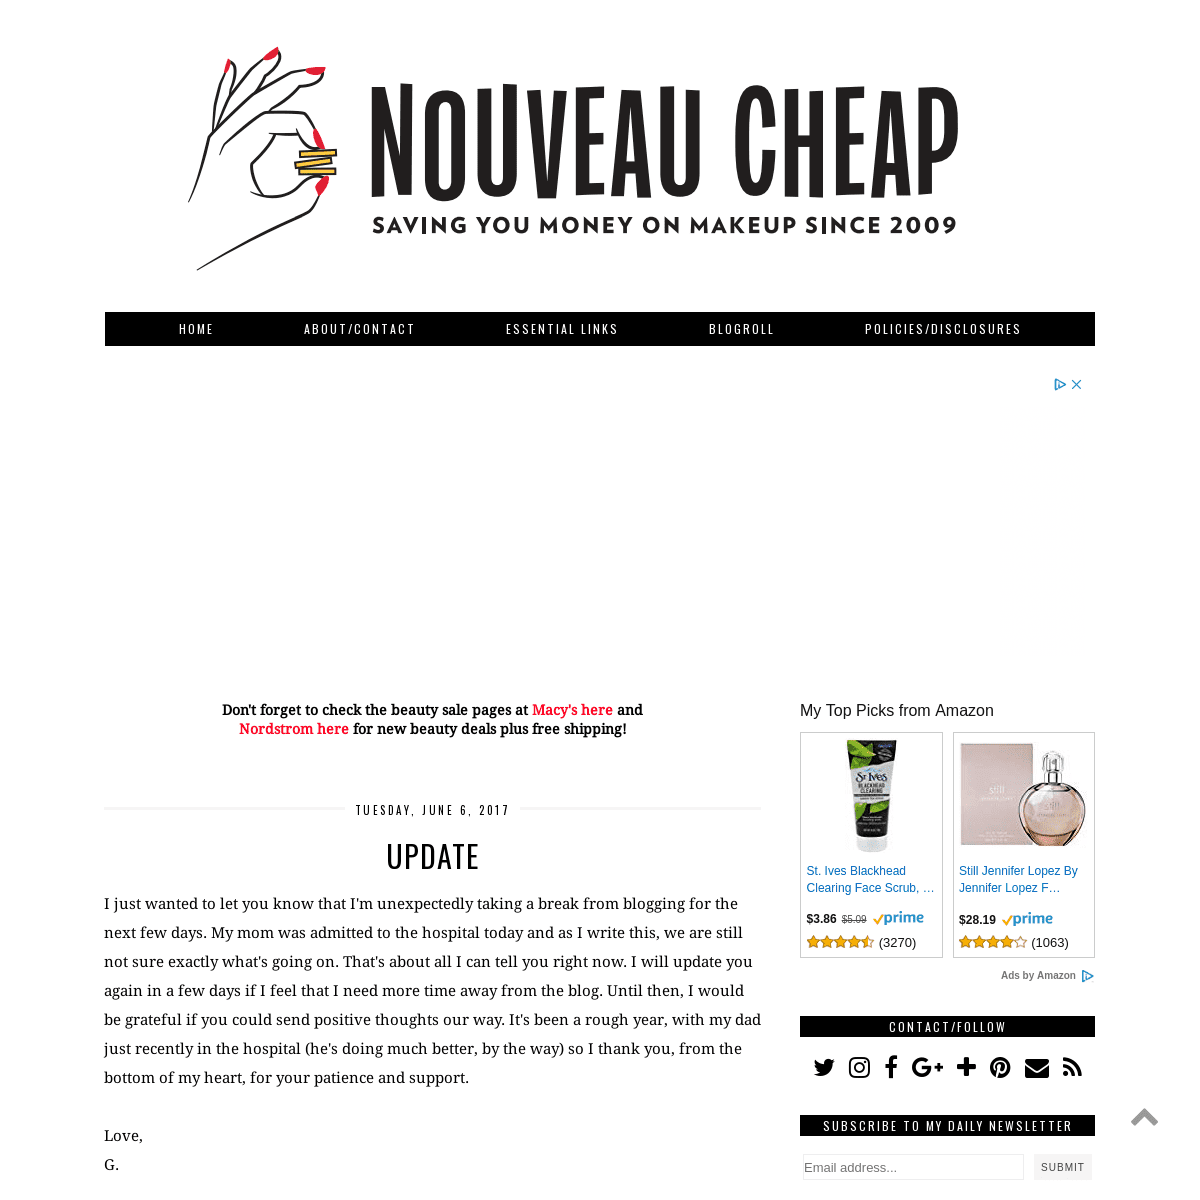 A complete backup of nouveaucheap.blogspot.com